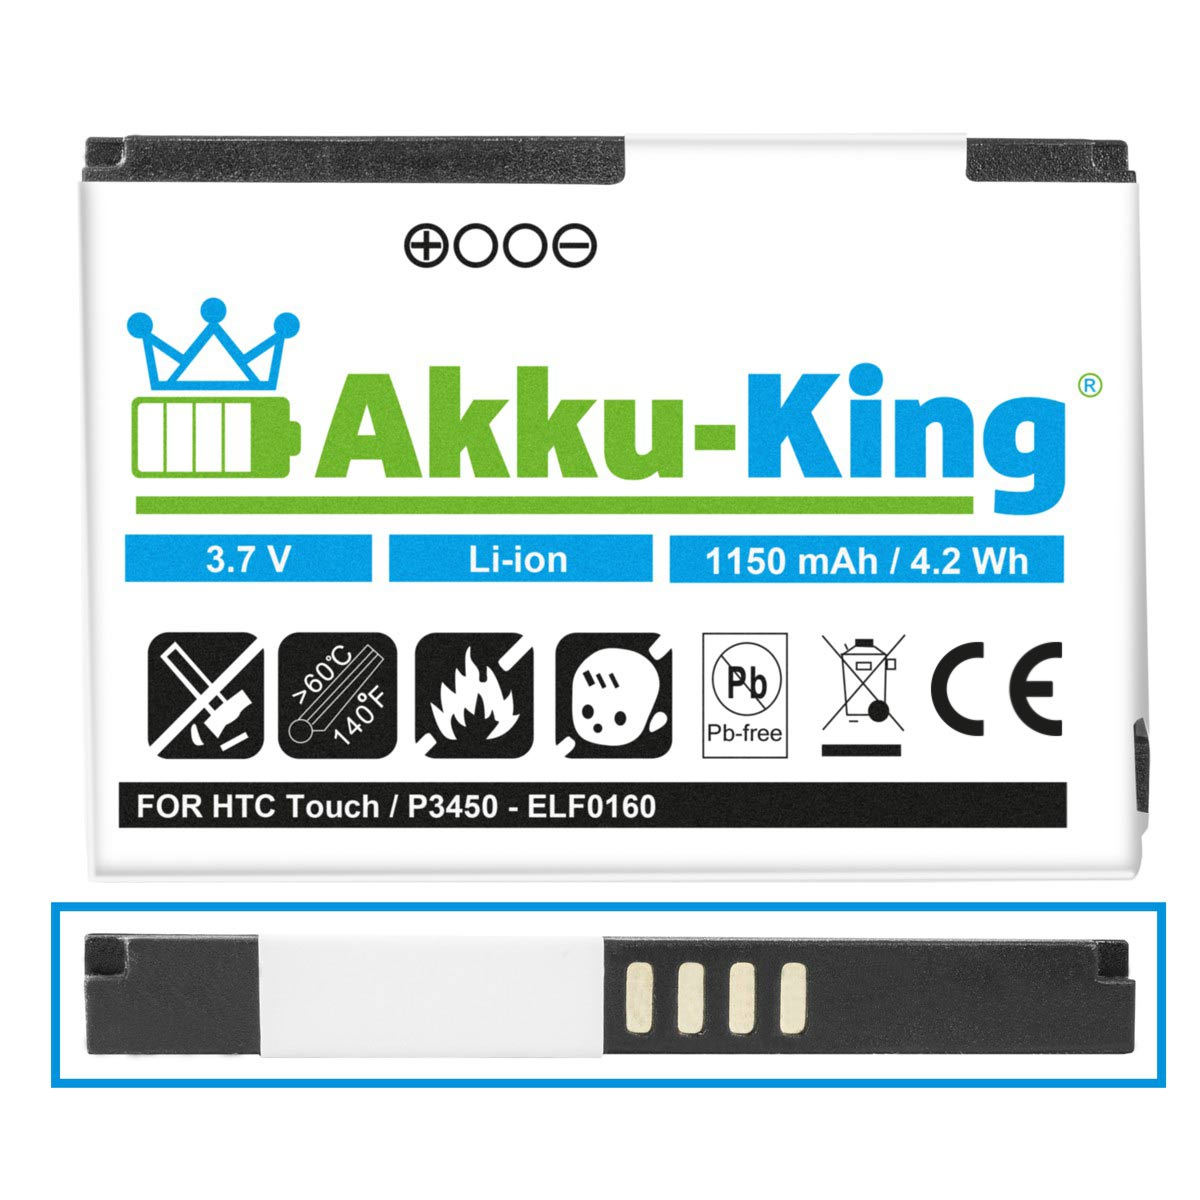 AKKU-KING Akku kompatibel BA Li-Ion HTC S230 3.7 Volt, mit 1150mAh Handy-Akku